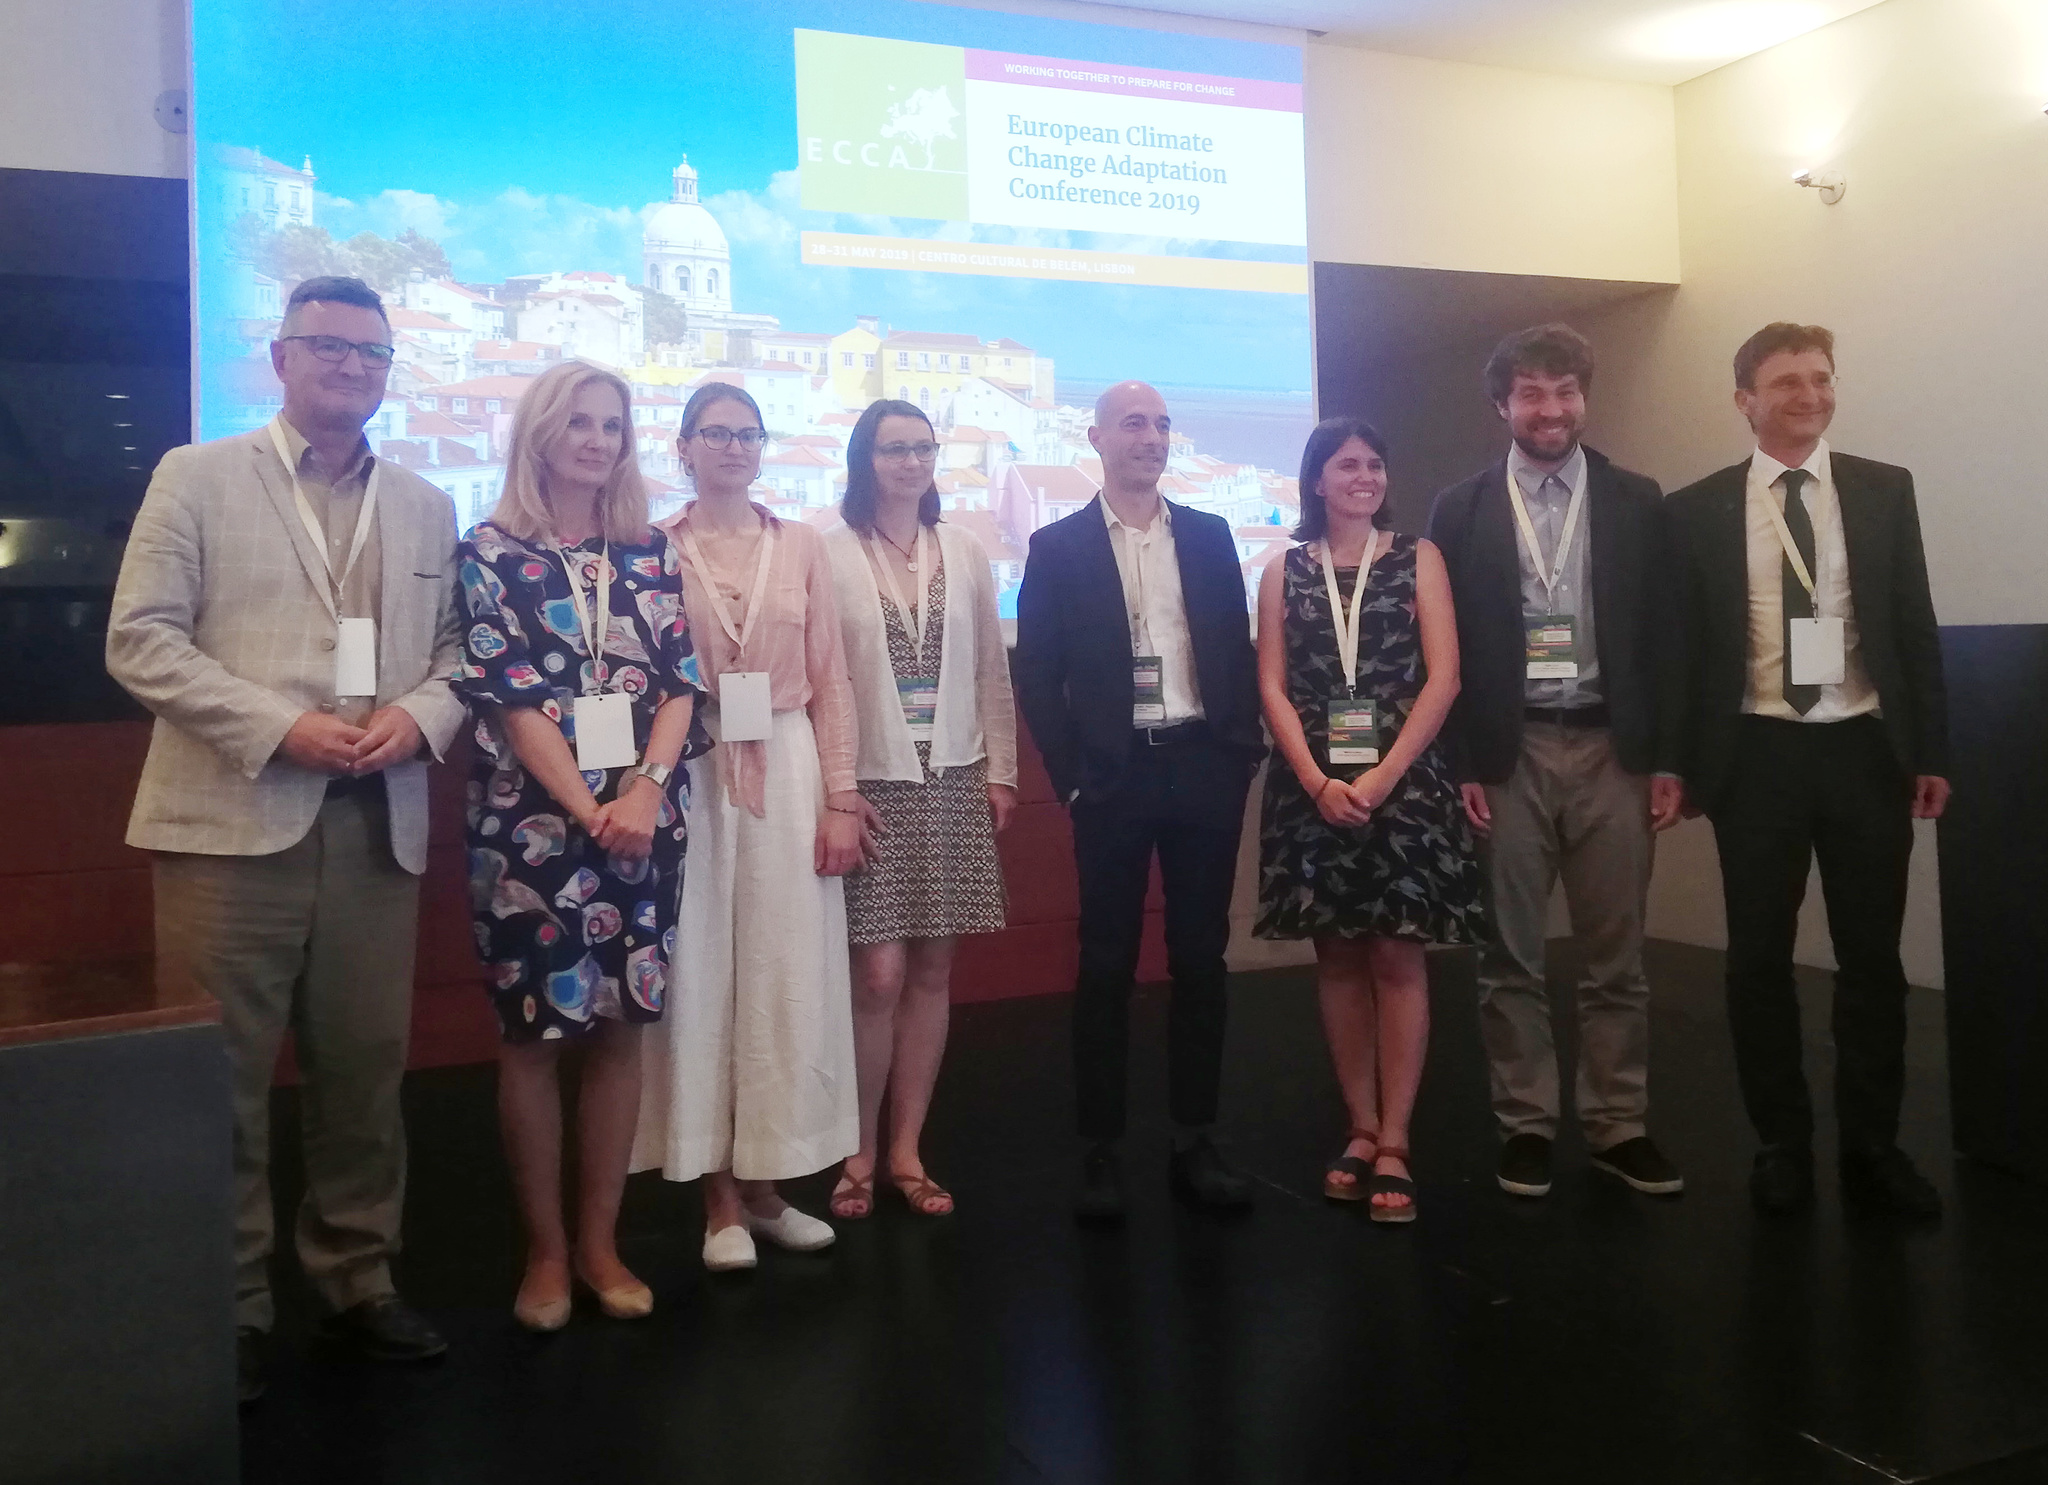 La Región de Murcia muestra sus avances en materia de adaptación al cambio climático en la conferencia europea ECCA 2019